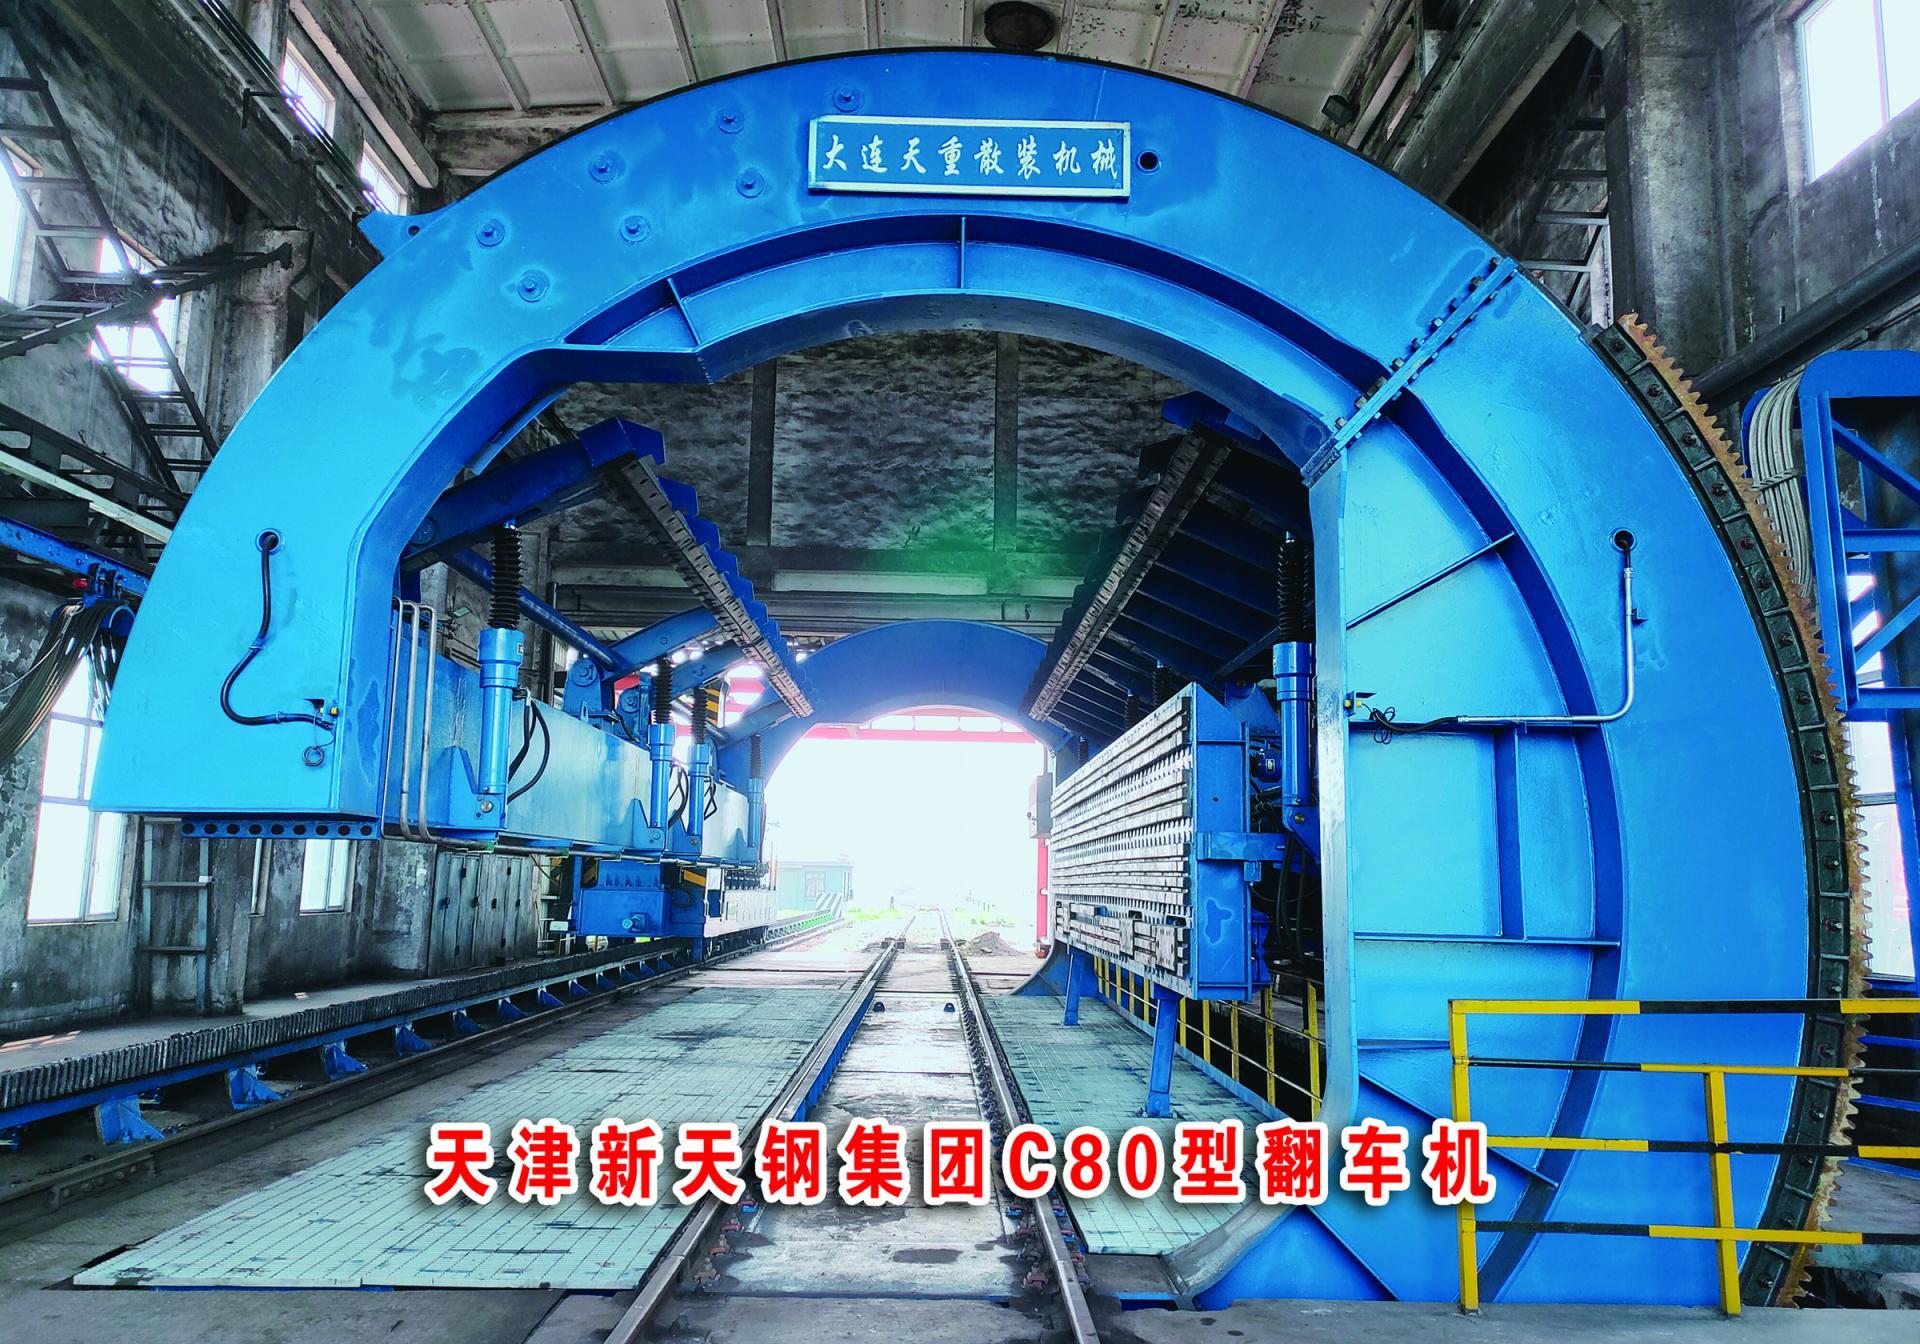 天津新天钢集团(c80型翻车机)